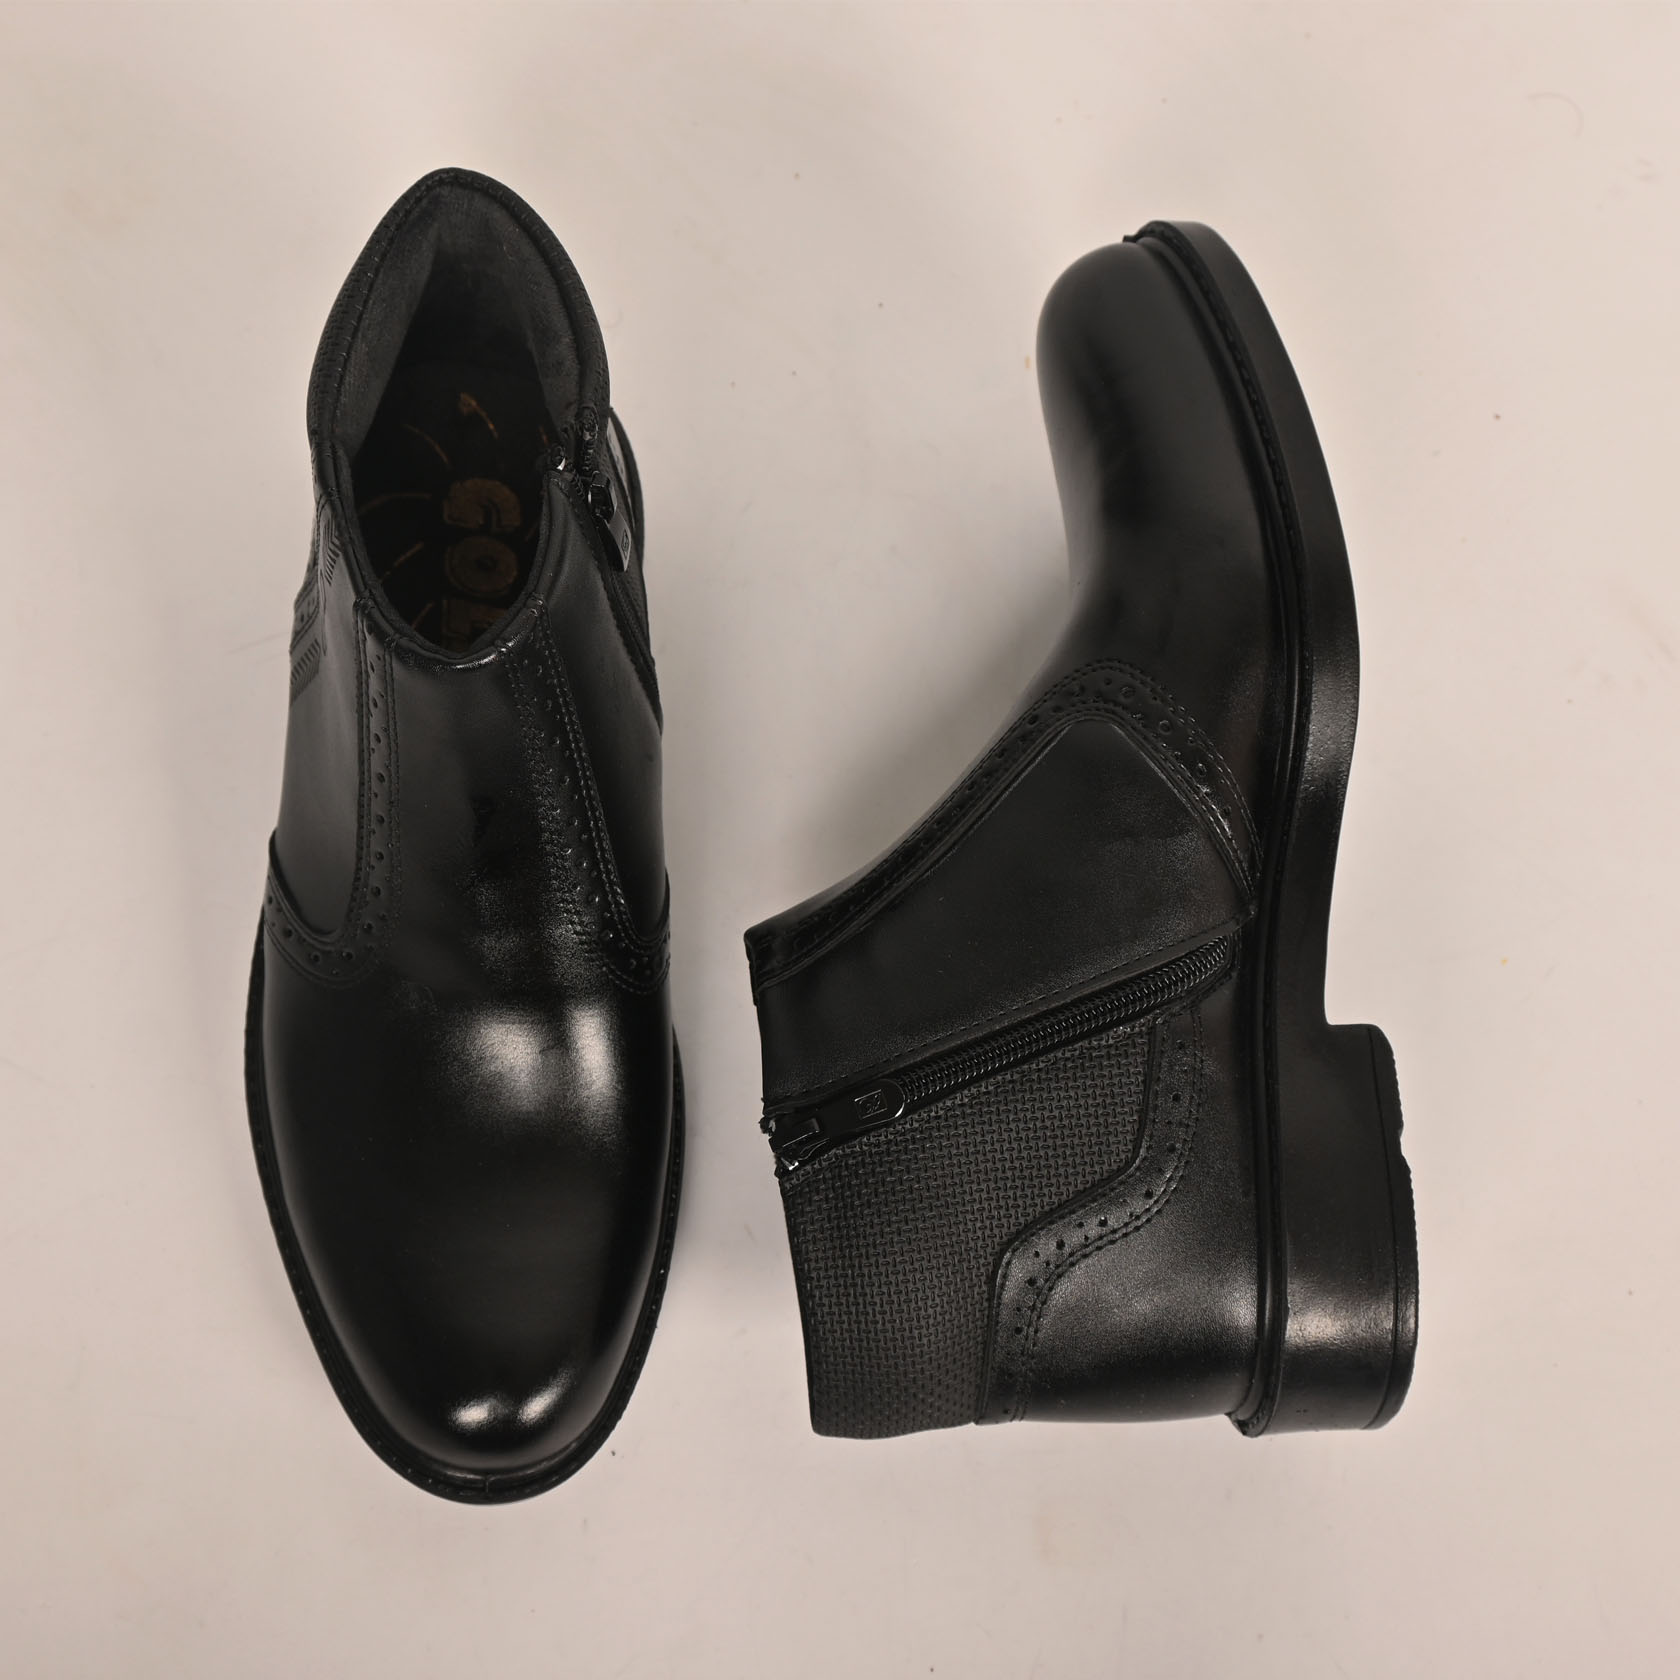 نیم بوت مردانه کفش سعیدی مدل 529m -  - 7